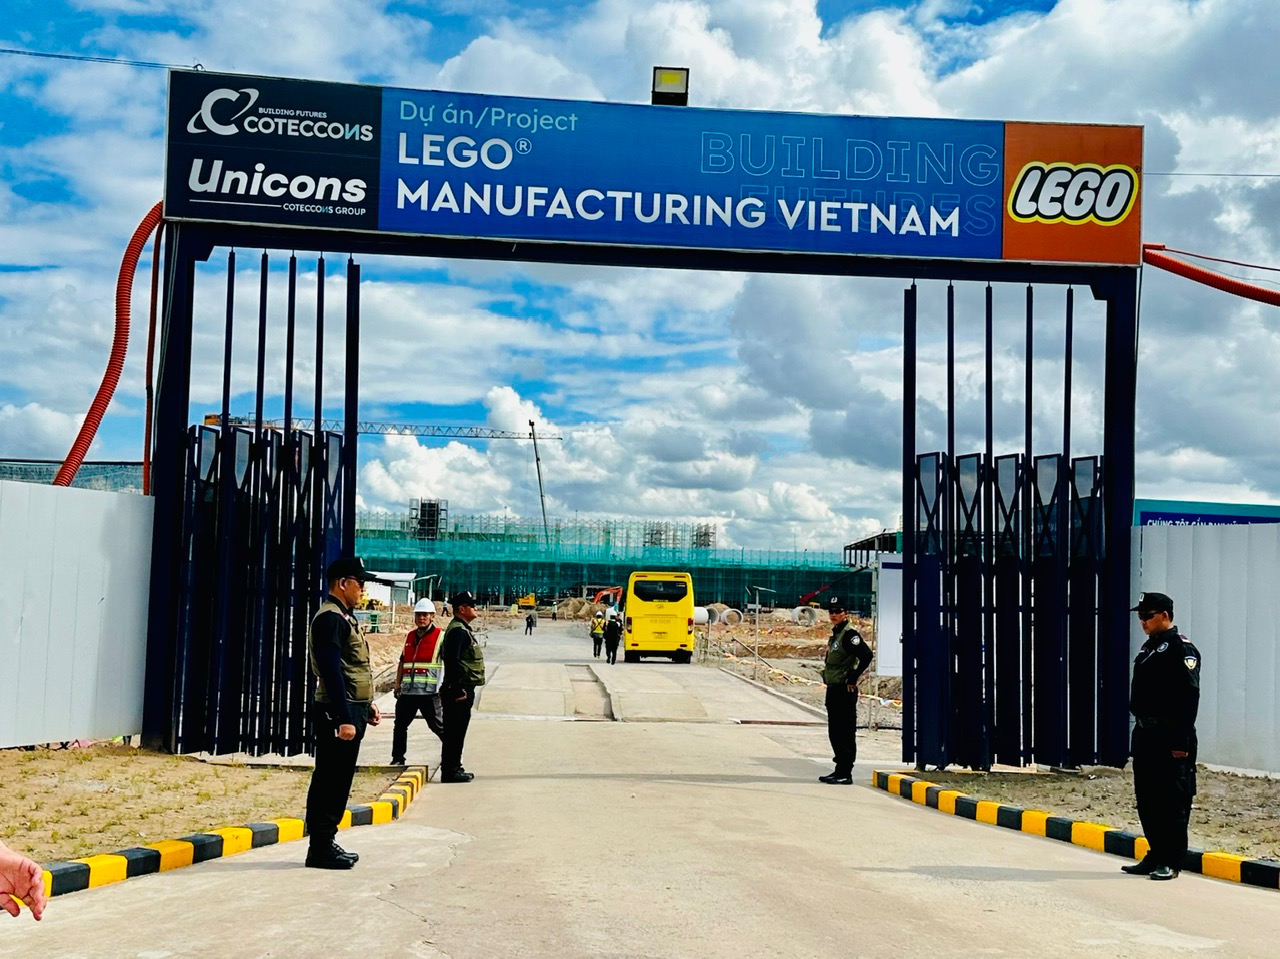 Lastest update - Lego Factory in Binh Duong